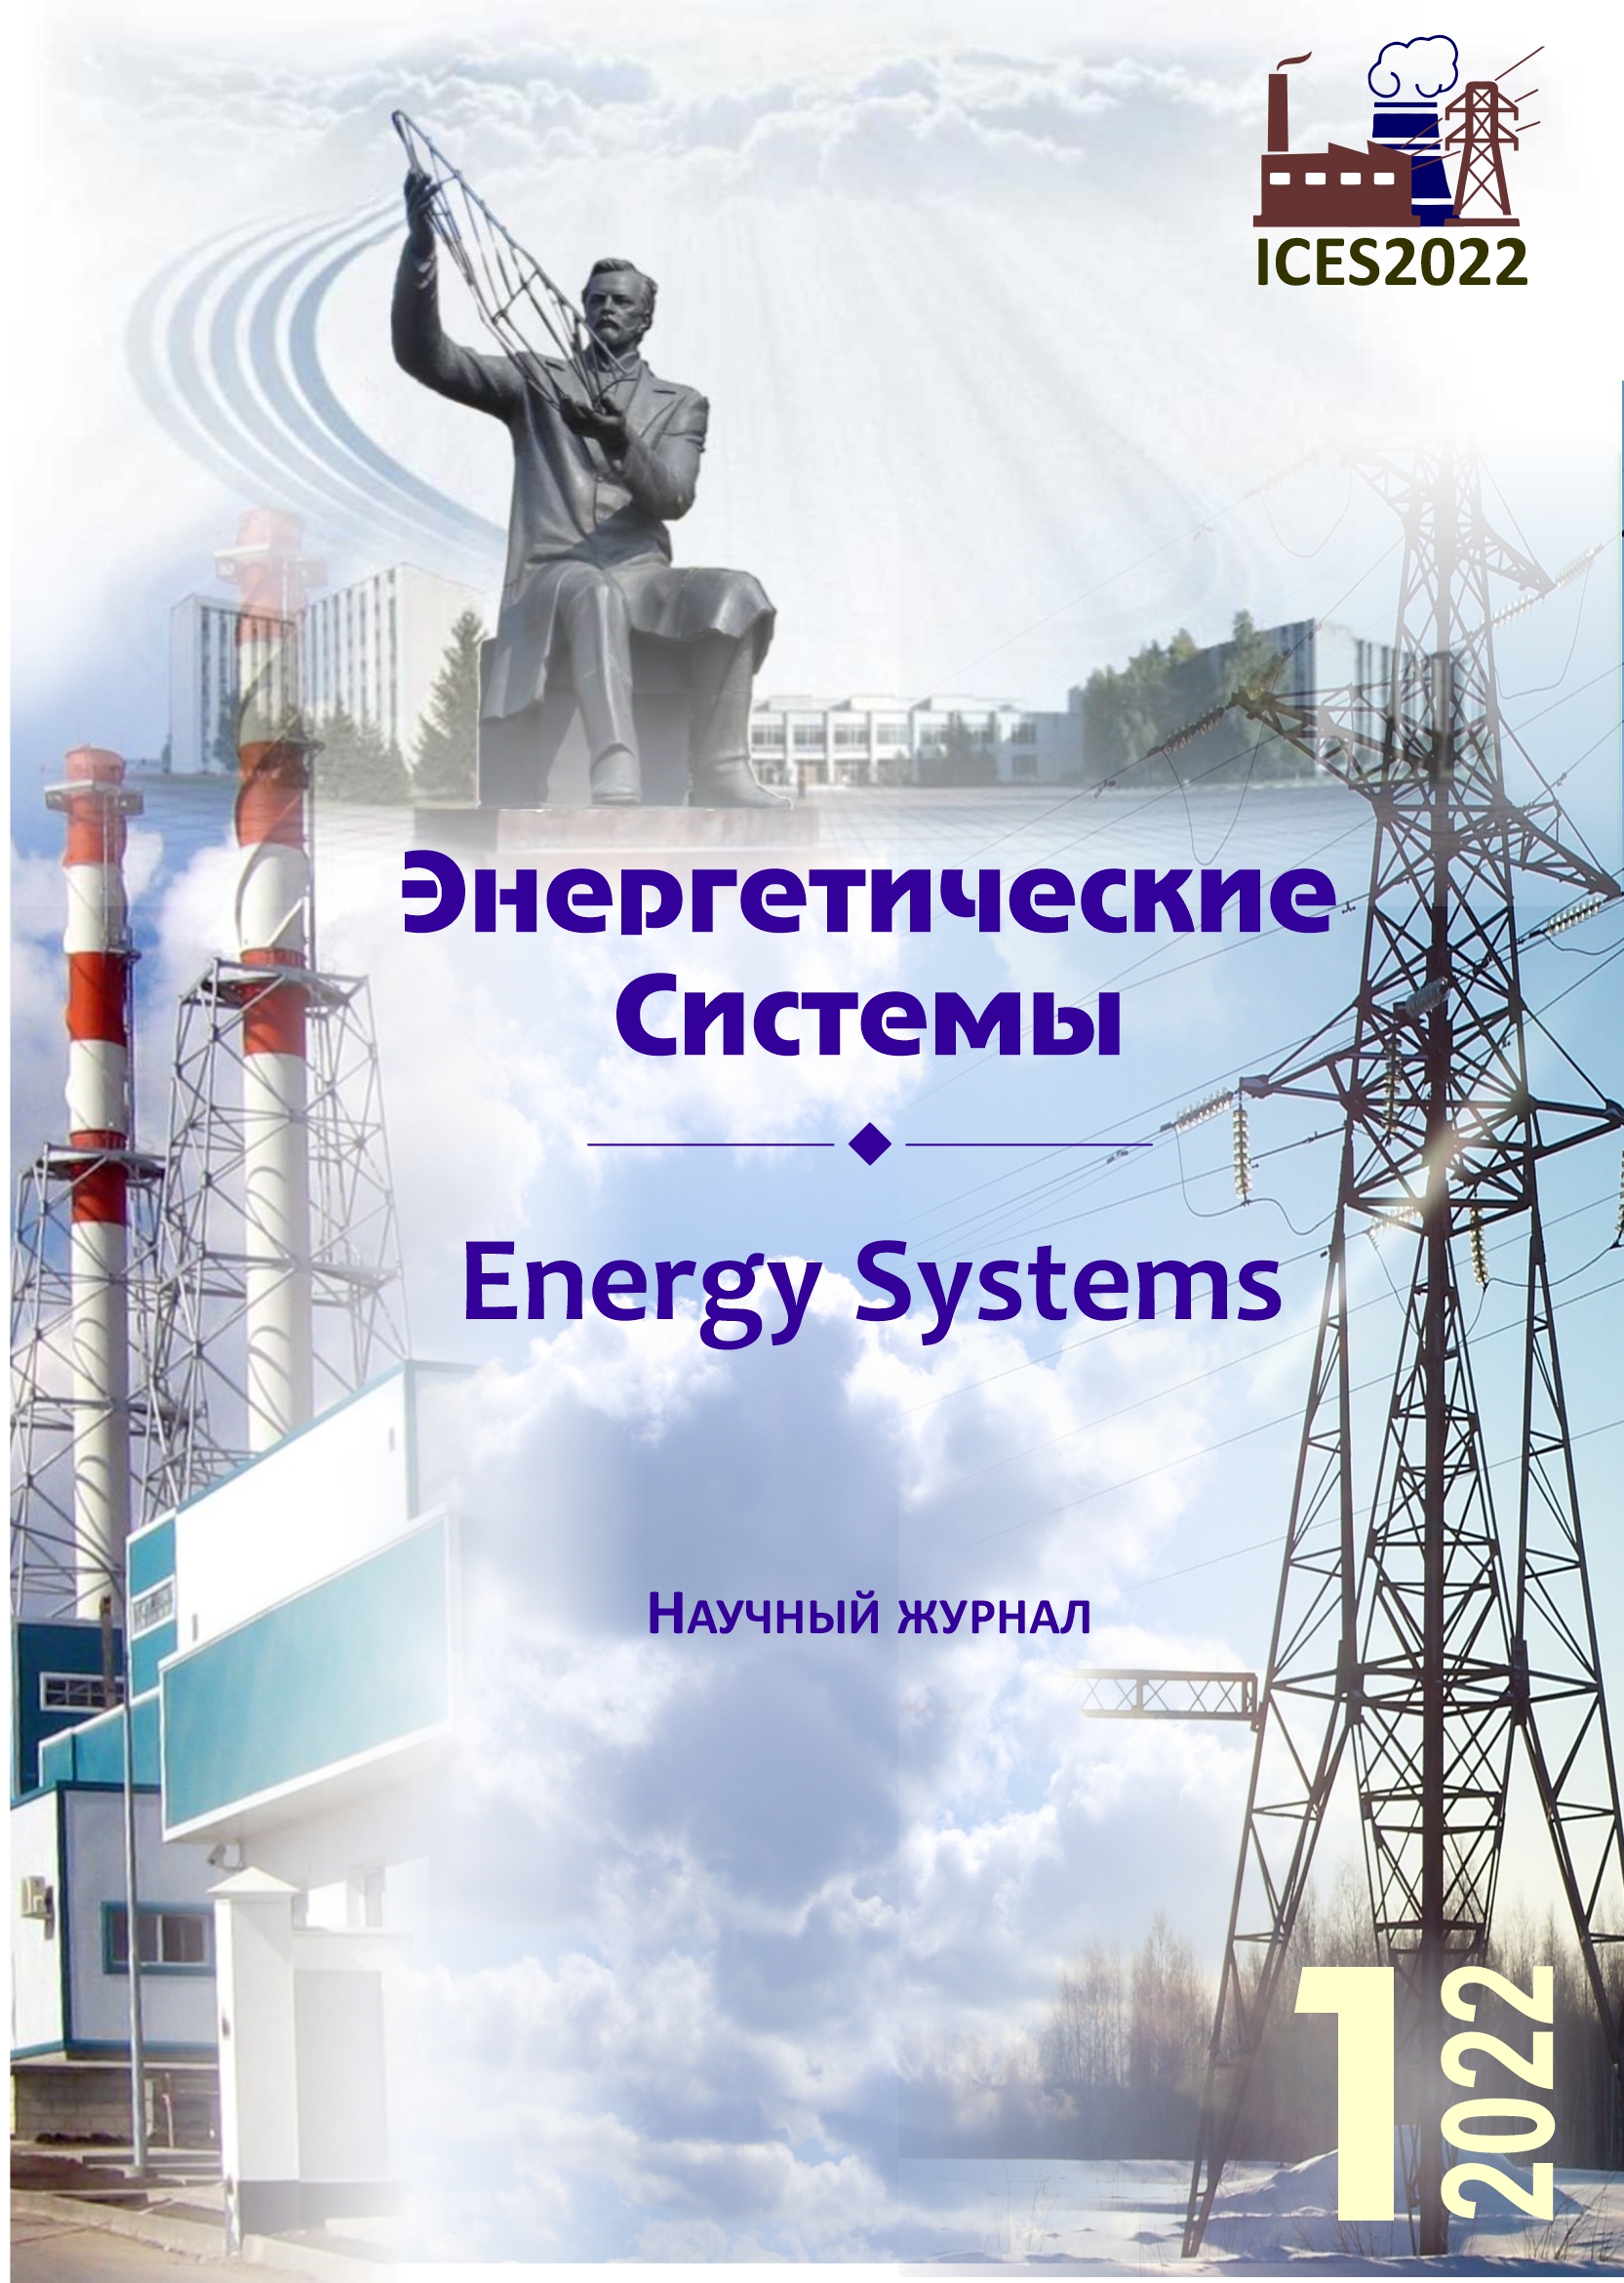 					Показать Том 7 № 1 (2022): VI международная научно-техническая конференция «Энергетические системы» (ICES-2022)
				